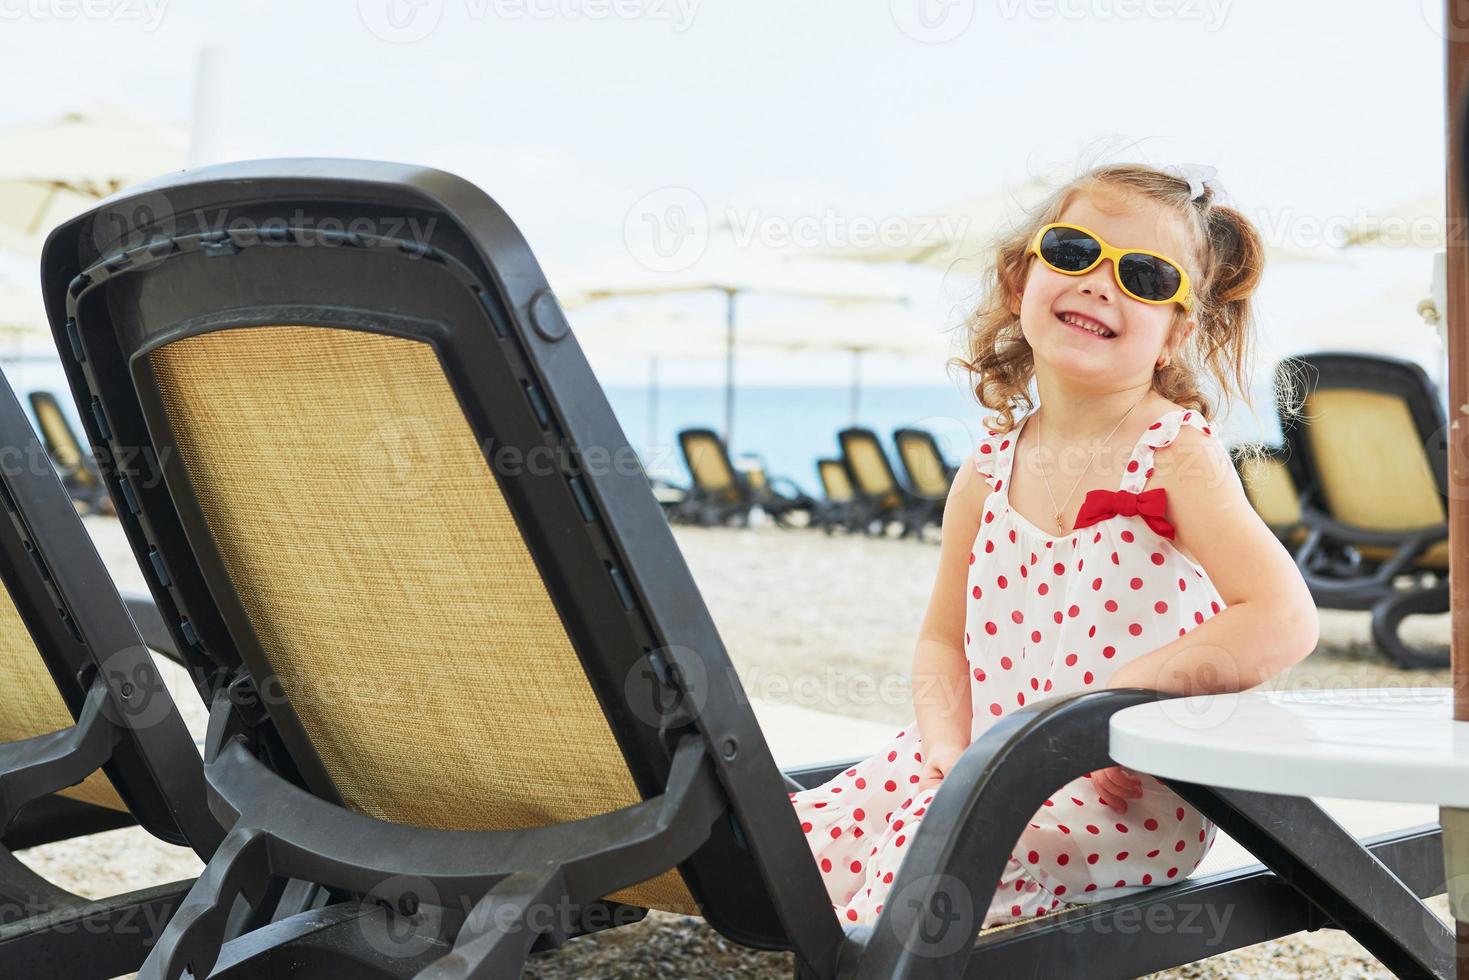 bambina felice sui lettini in riva al mare, in posa per la macchina fotografica foto